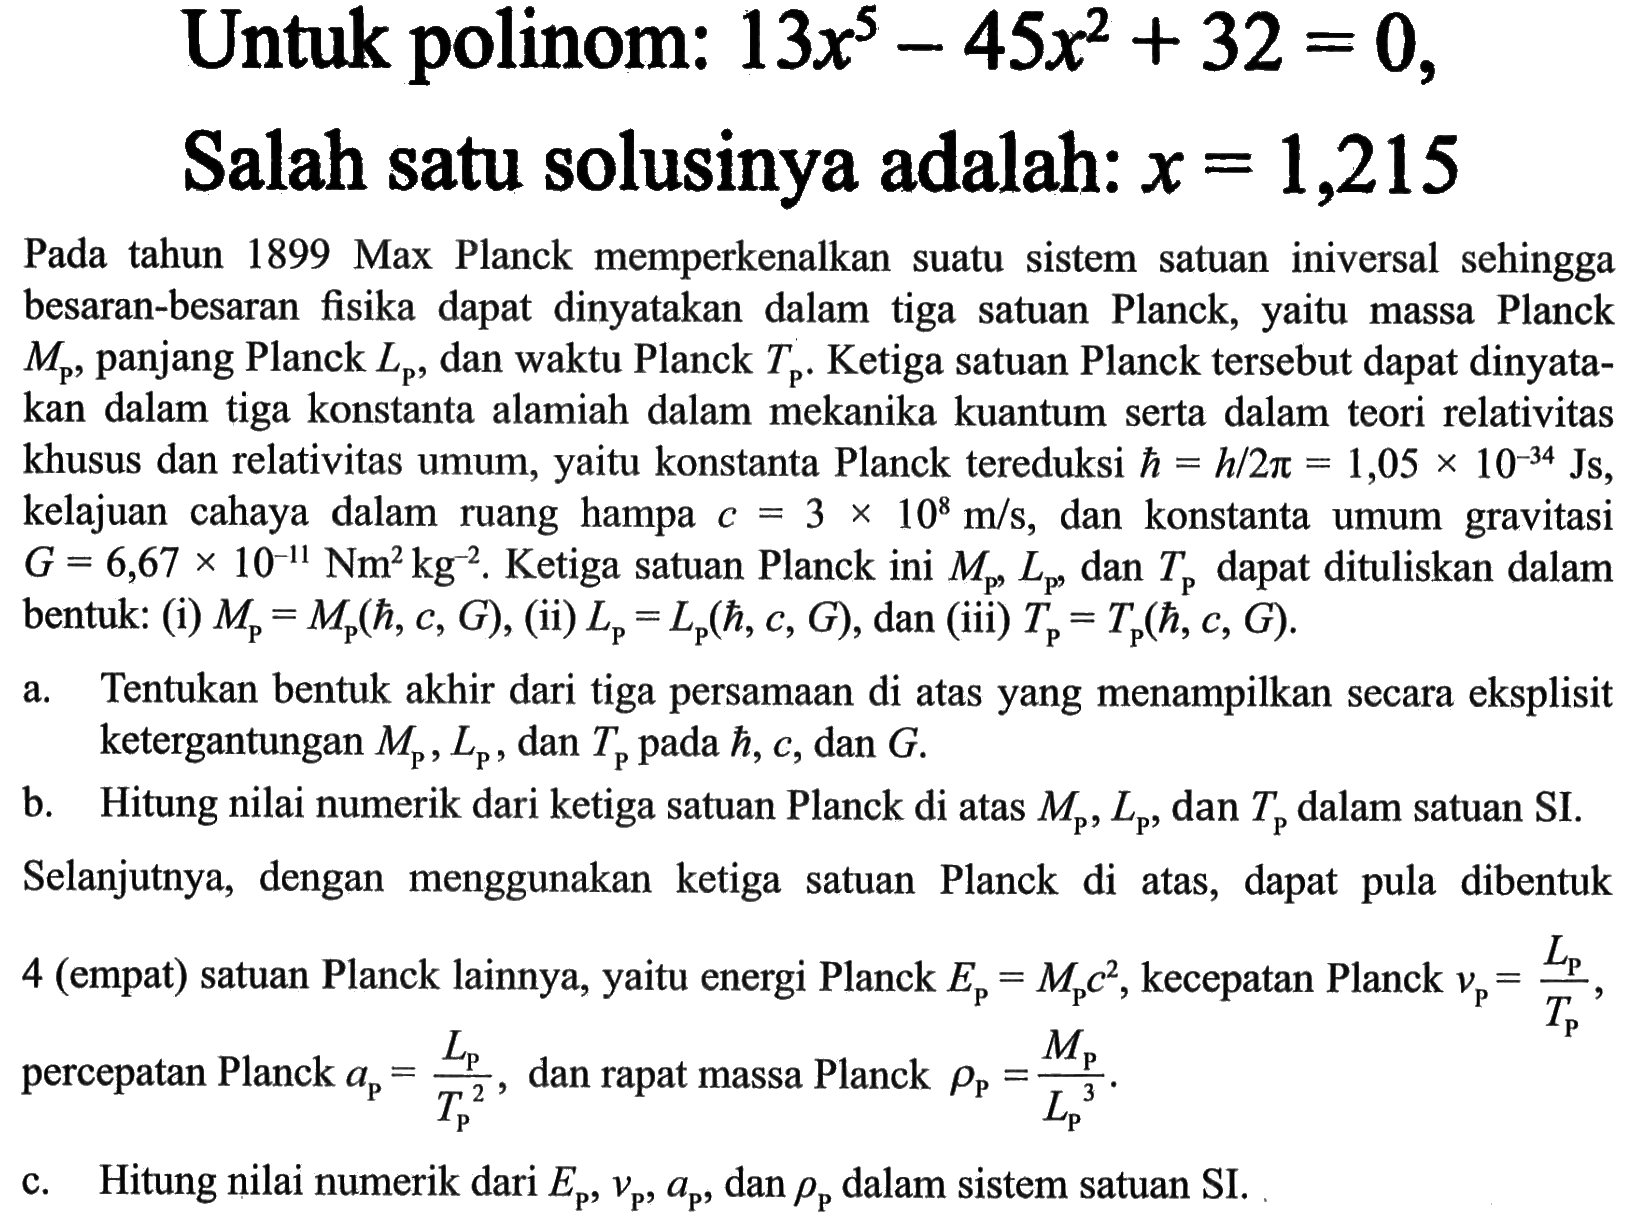 Untuk polinom: 13x^5-45x^2+32=0, Salah satu solusinya adalah: x=1,215 Pada tahun 1899 Max Planck memperkenalkan suatu sistem satuan iniversal sehingga besaran-besaran fisika dapat dinyatakan dalam tiga satuan Planck, yaitu massa Planck Mp, panjang Planck Lp, dan waktu Planck Tp. Ketiga satuan Planck tersebut dapat dinyatakan dalam tiga konstanta alamiah dalam mekanika kuantum serta dalam teori relativitas khusus dan relativitas umum, yaitu konstanta Planck tereduksi h = h/2 pi = 1,05 x 10^(-34) Js, kelajuan cahaya dalam ruang hampa c = 3 x 10^8 m/s, dan konstanta umum gravitasi G = 6,67 x 10^(-11) Nm^2 kg^(-2). Ketiga satuan Planck ini Mp, Lp, dan Tp dapat dituliskan dalam bentuk: (i) Mp = Mp(h, c, G), (ii) Lp = Lp(h, c, G), dan (iii) Tp = Tp(h, c, G). a. Tentukan bentuk akhir dari tiga persamaan di atas yang menampilkan secara eksplisit ketergantungan Mp, Lp, dan Tp pada h, c, dan G. b. Hitung nilai numerik dari ketiga satuan Planck di atas Mp, Lp, dan Tkg dalam satuan SI. Selanjutnya, dengan menggunakan ketiga satuan Planck di atas, dapat pula dibentuk 4 (empat) satuan Planck lainnya, yaitu energi Planck Ep=Mp c^2, kecepatan Planck vp=Lp/Tp, percepatan Planck ap=Lp/Tp^2, dan rapat massa Planck rho p=Mp/Lp^3.  c. Hitung nilai numerik dariEp, vp, ap, dan rho p  dalam sistem satuan SI. 